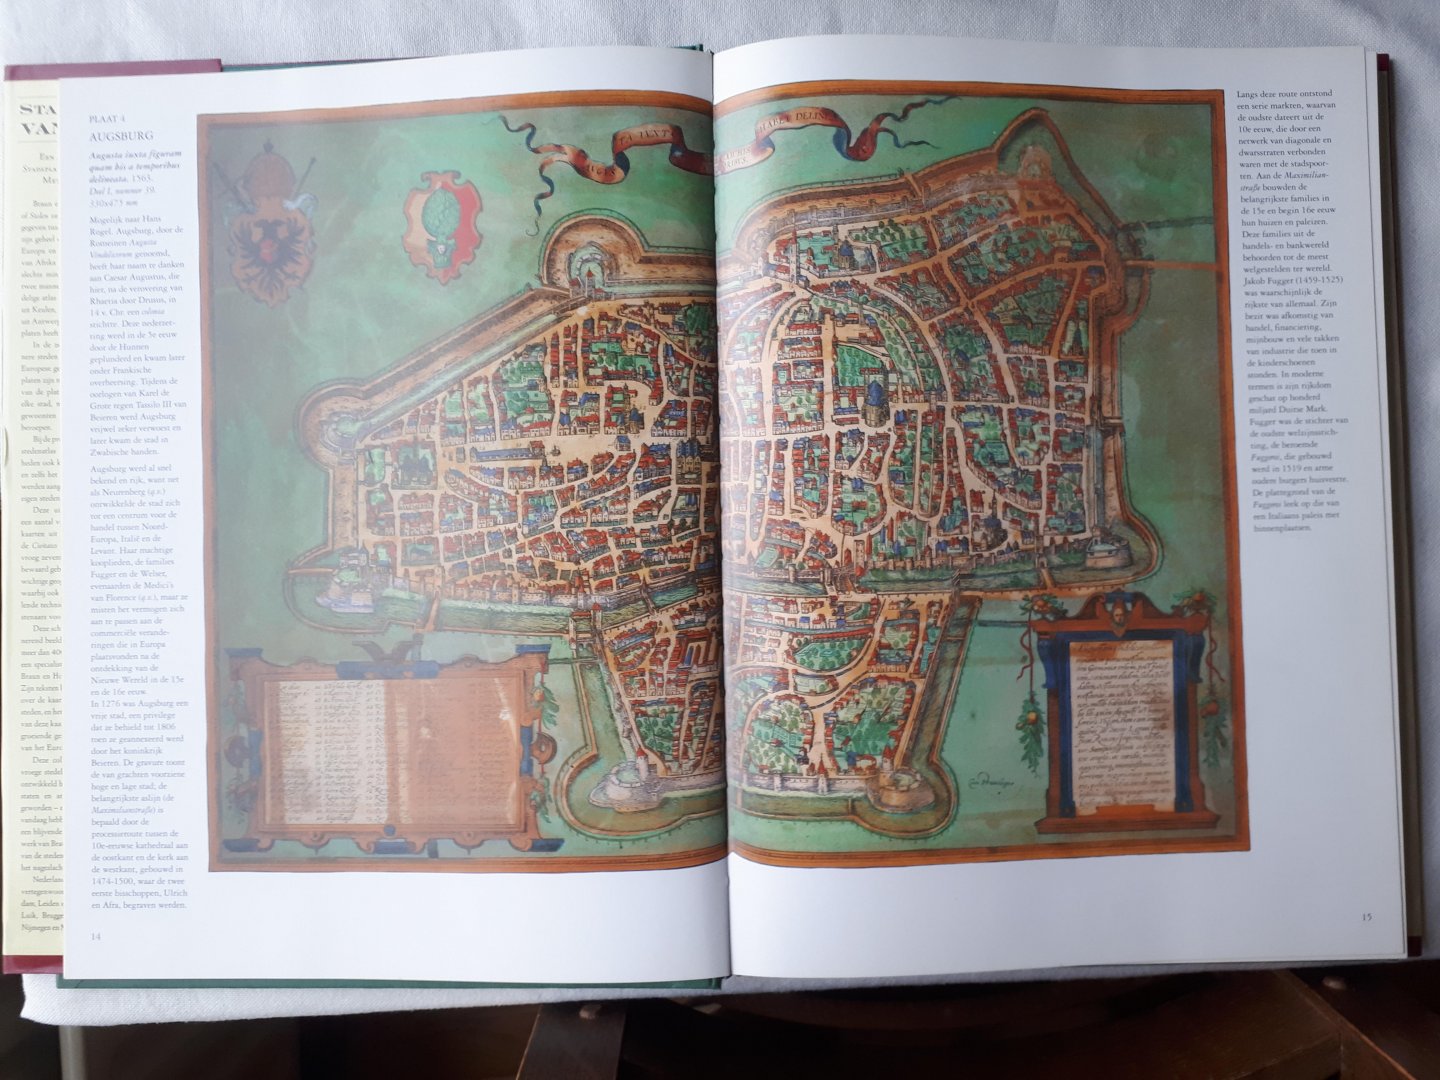 Goss - Stadskaarten van Europa / Een selectie van 16de eeuwse stadsplattegronden en afbeeldingen